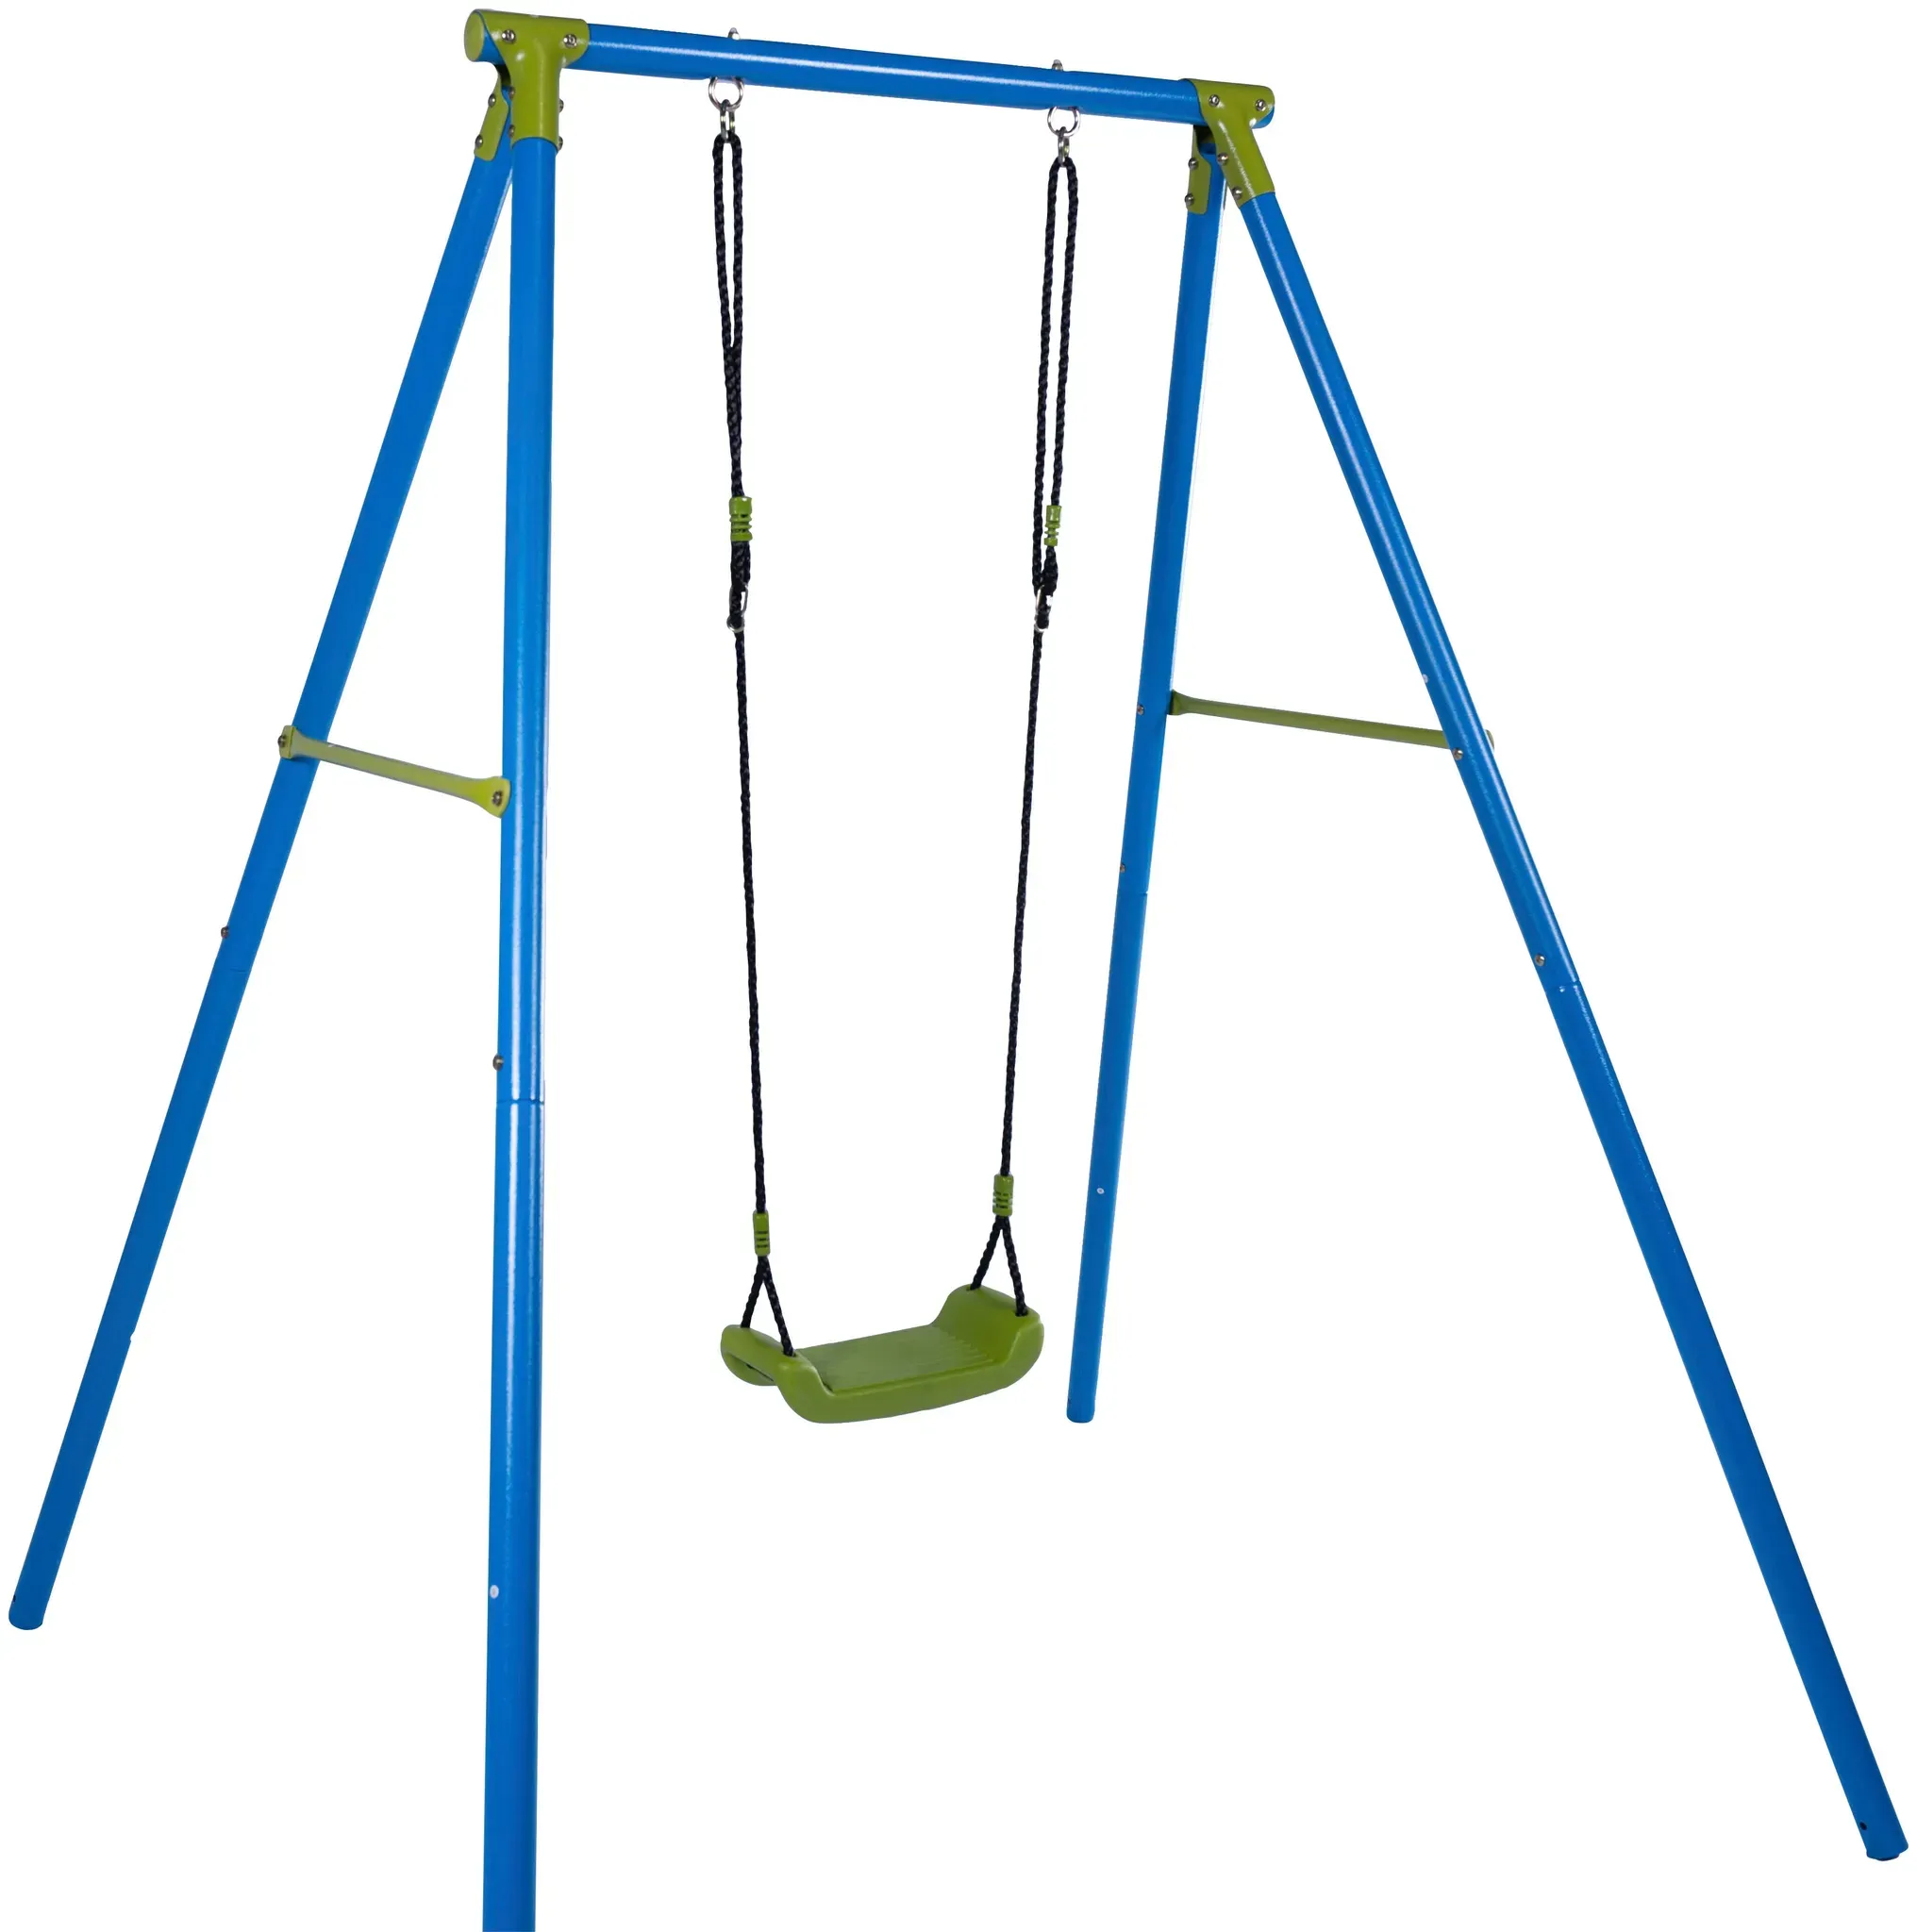 Einzelschaukel SANDORA Schaukeln blau (blau, grün) Kinder Schaukel Wippen Aufbaumaße H x L B 200 153 163 cm, belastbar bis 50 kg